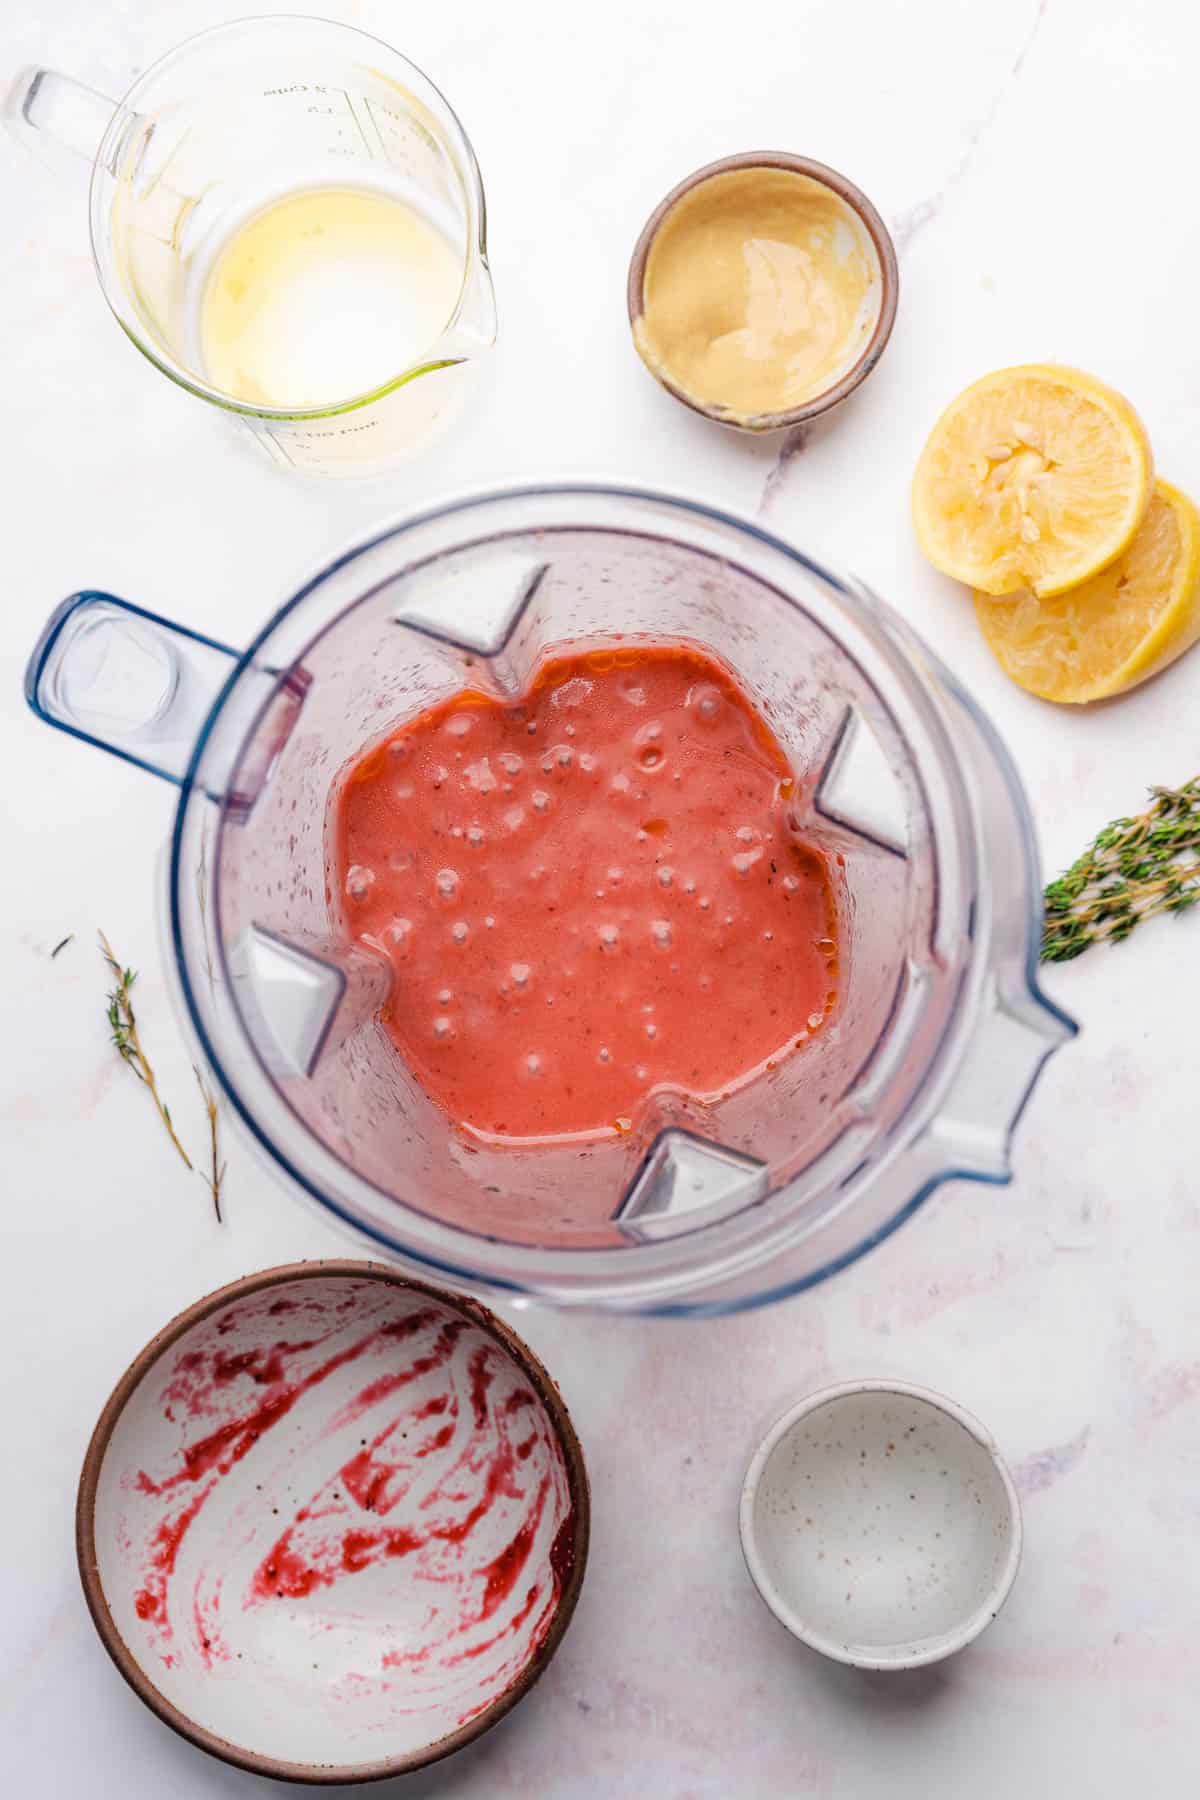 blended cranberry salad dressing in a blender 